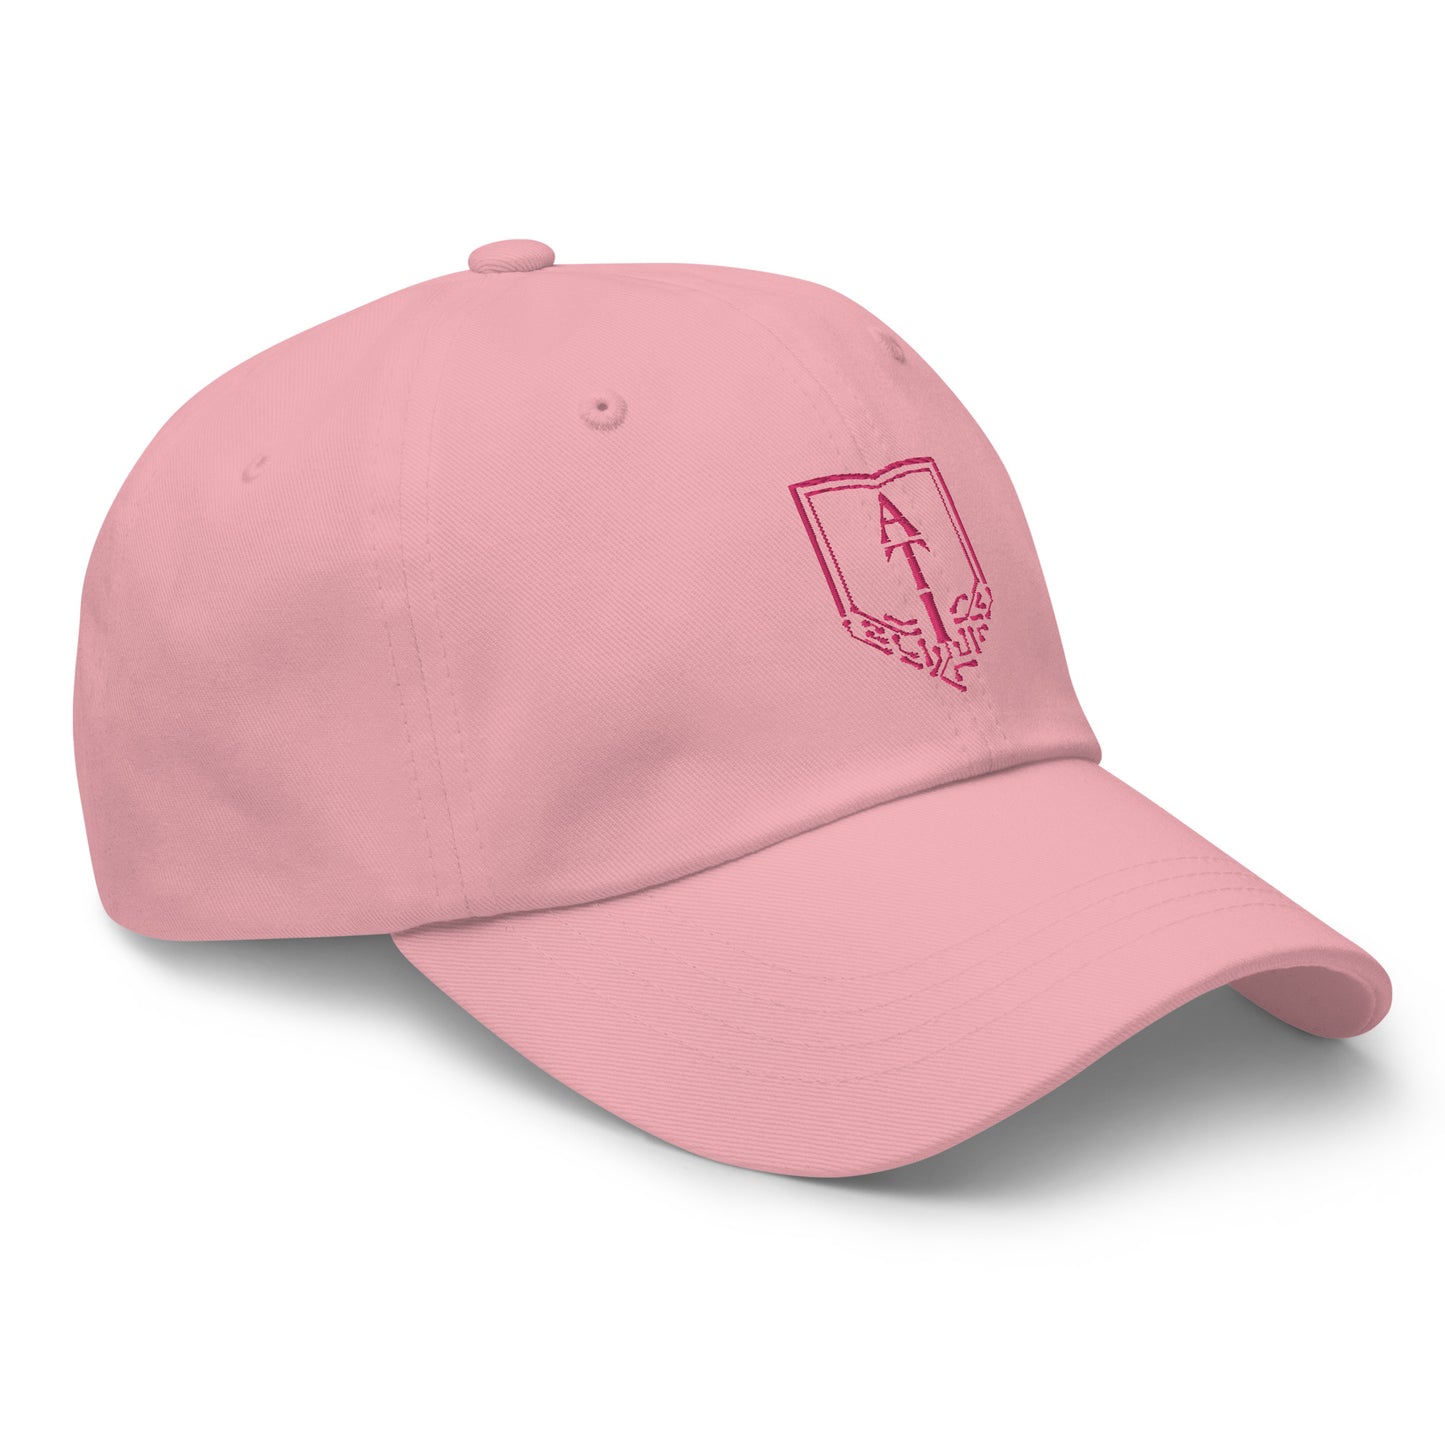 ATI Pink Dad hat